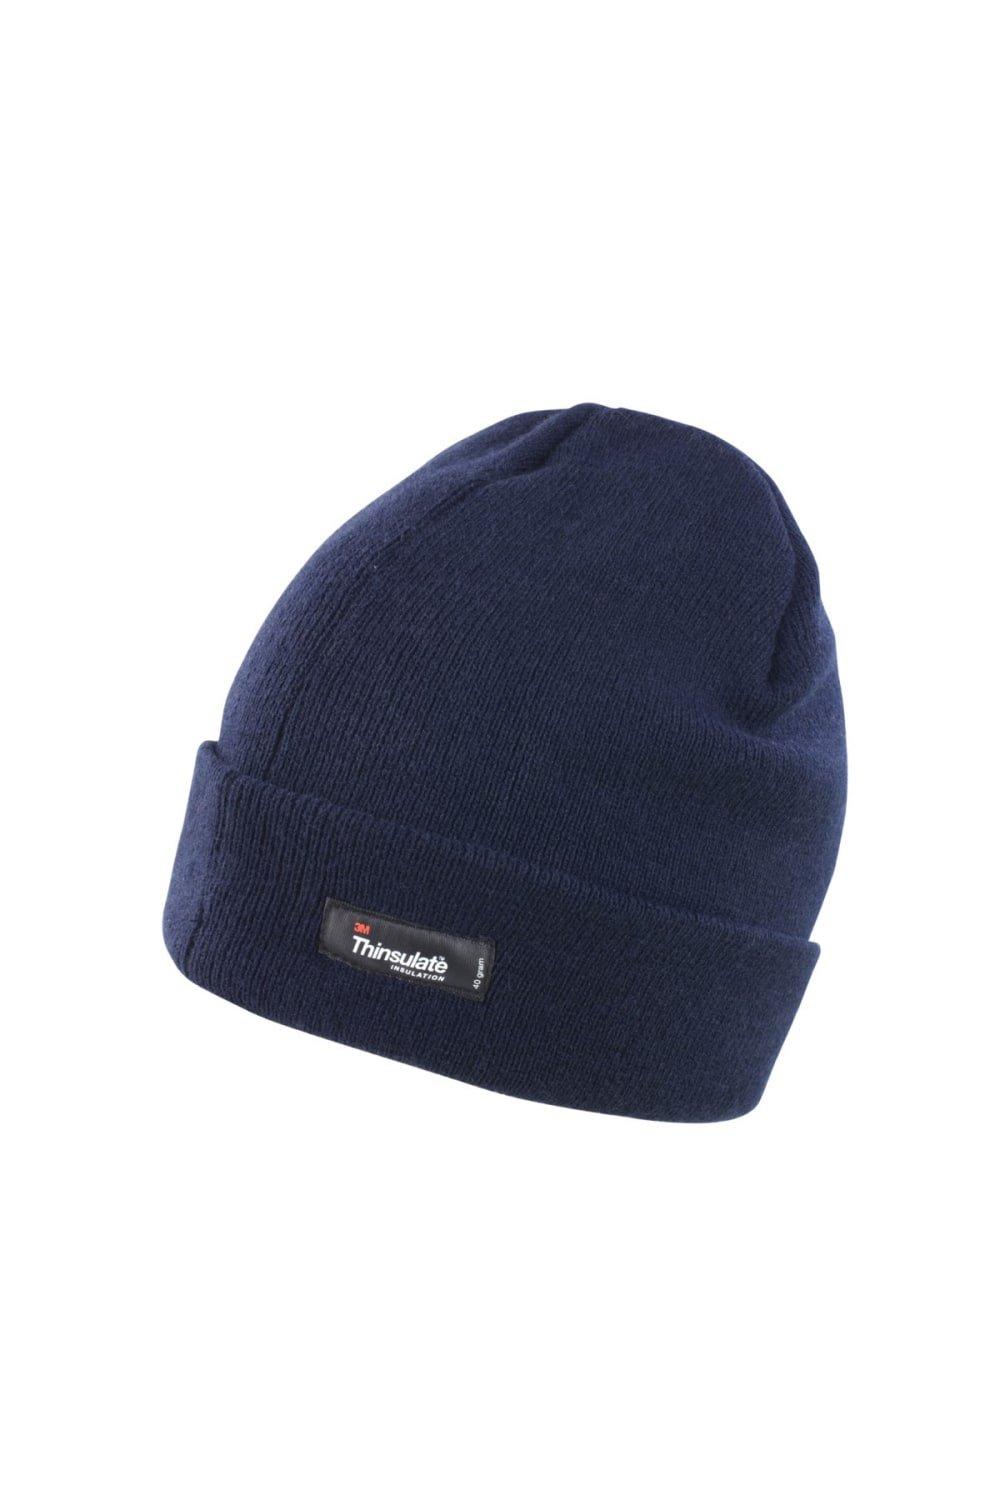 цена Легкая термозимняя шапка Thinsulate (3M, 40 г) Result, темно-синий